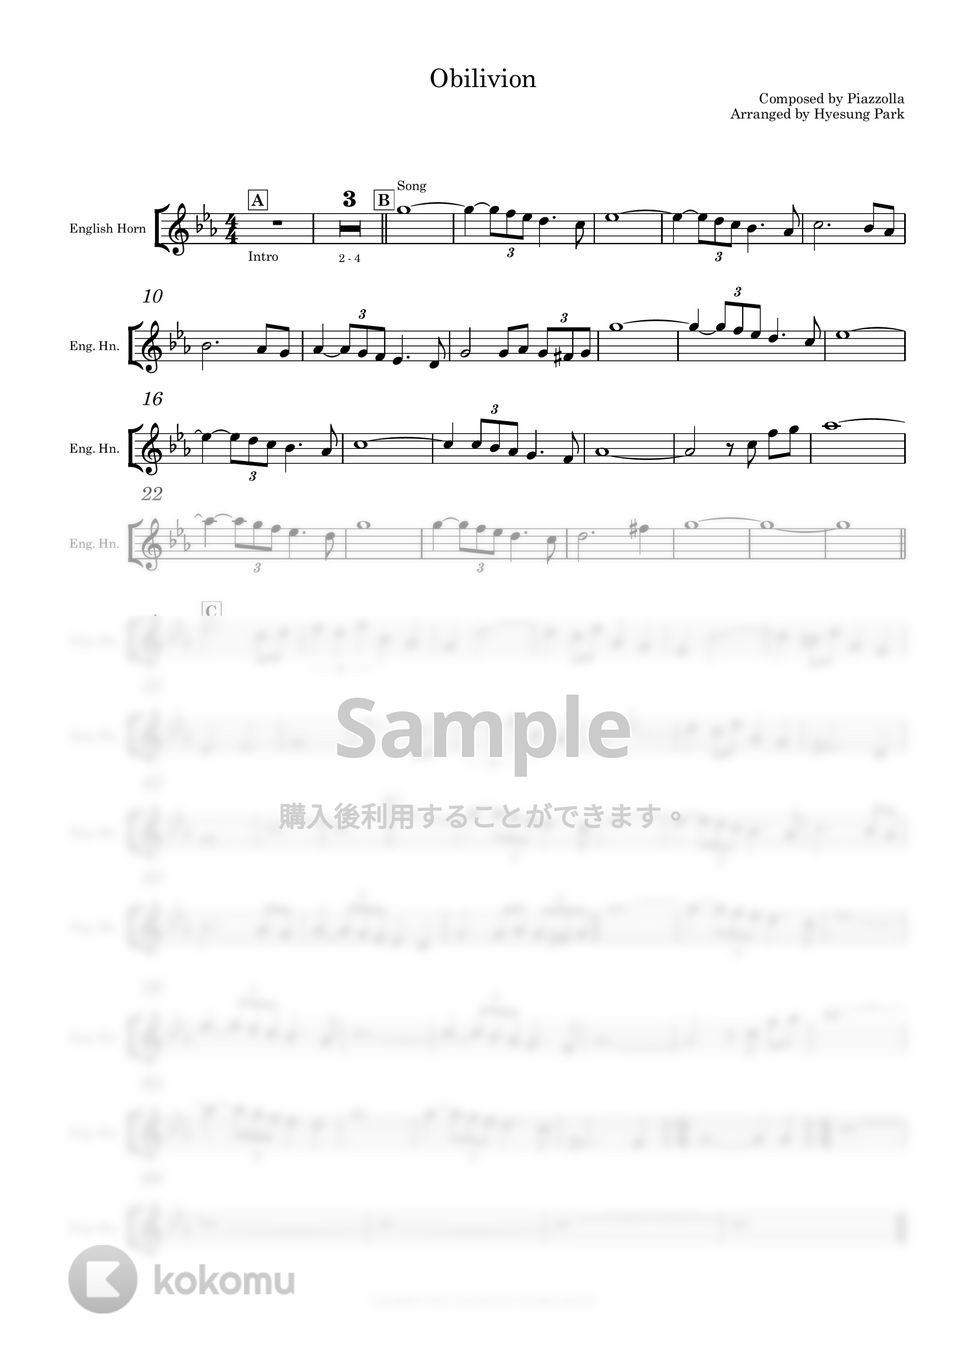 Piazzolla ピアソラ - Oblivion オブリビオン (デュエット/ピアノと楽器) by Piano QQQ